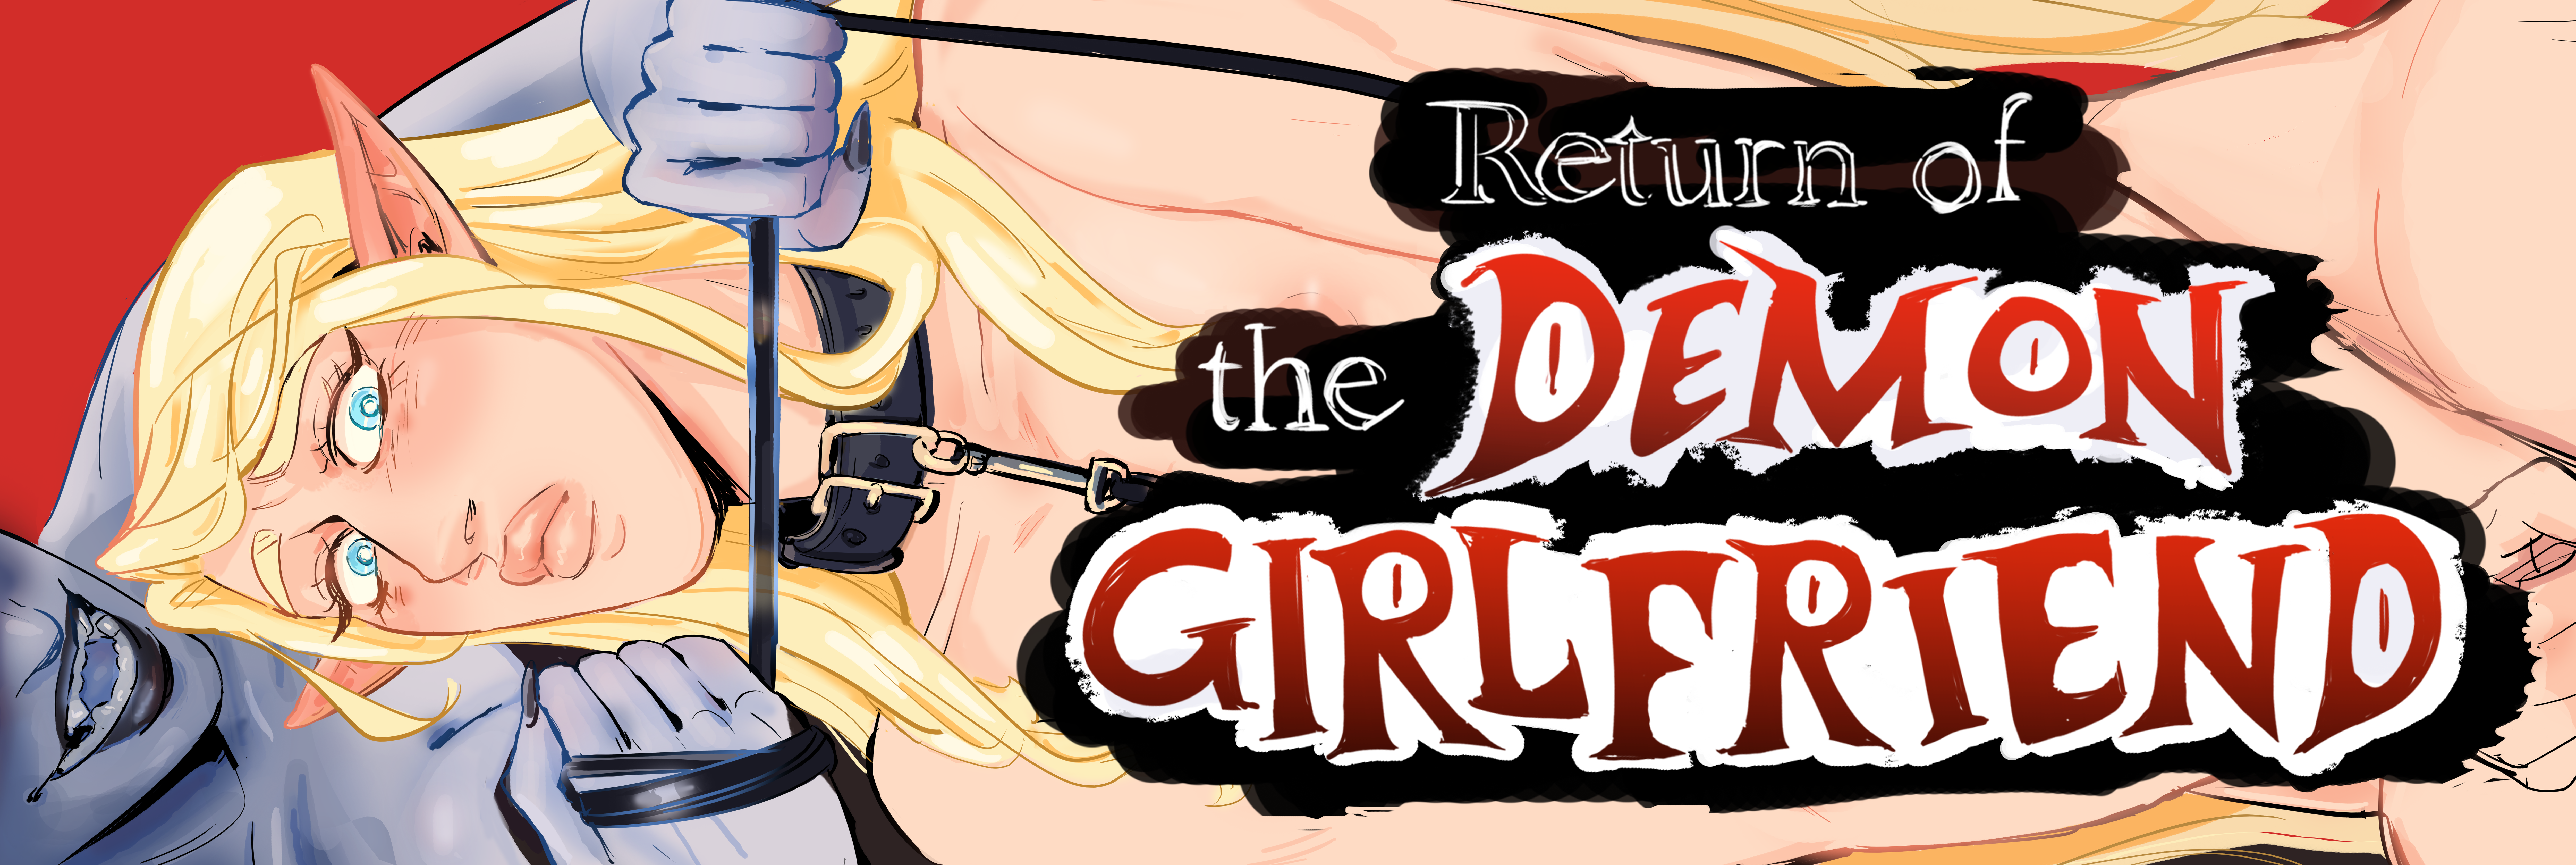 Return of the Demon Girlfriend, queer erotica comics